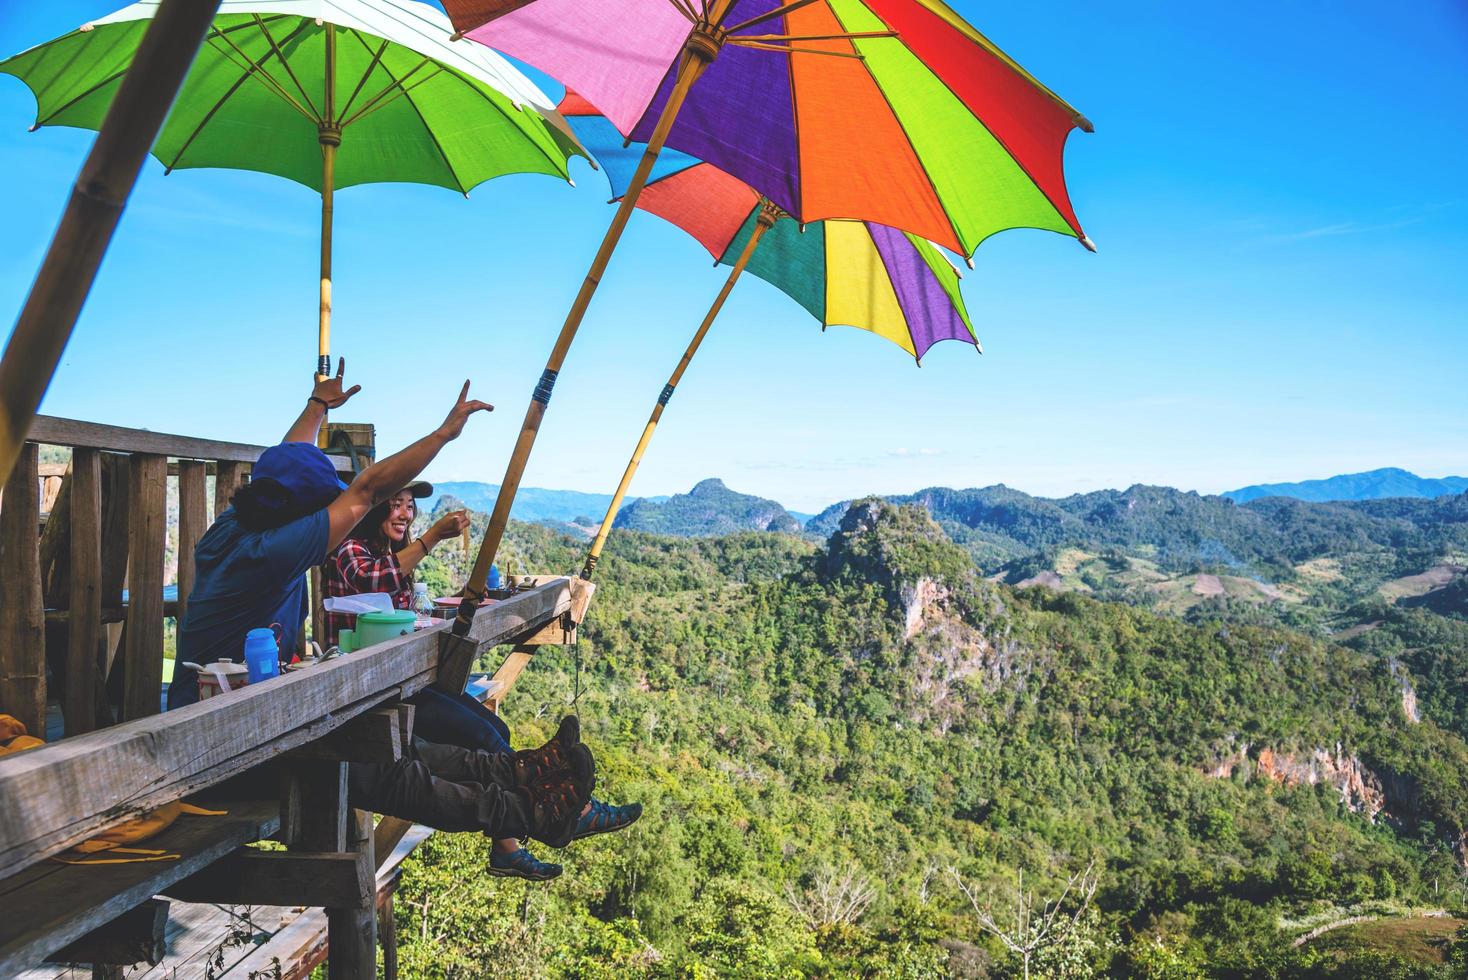 toeristen aziatisch paar zittend eten noedels op het houten platform en kijken schilderachtig uitzicht op prachtige natuur bergen bij verbod jabo, mae hong son, thialand. foto